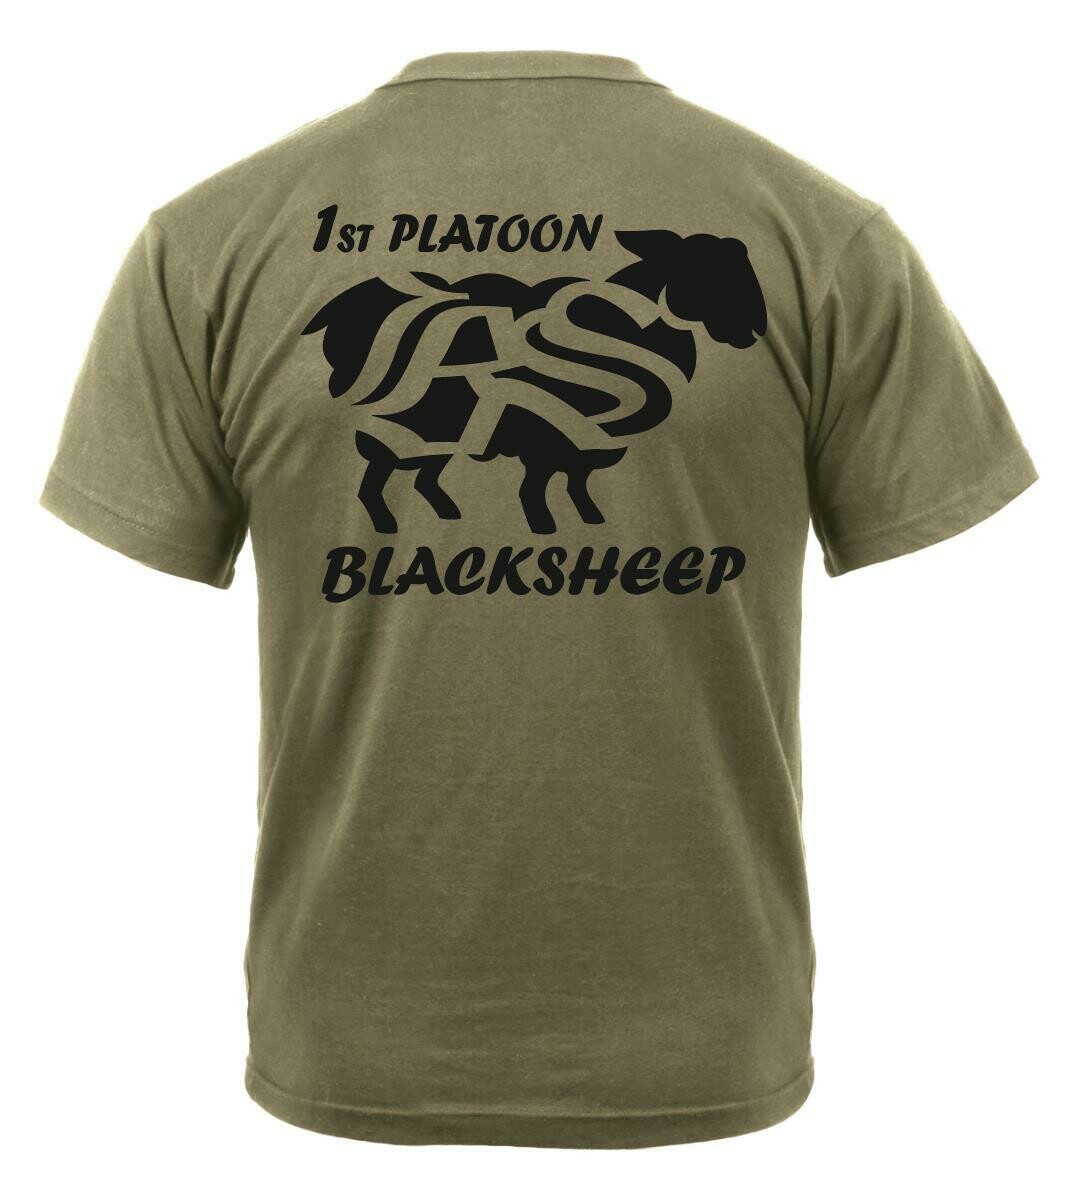 1st Platoon Blacksheep, 2-502 PT Shirt